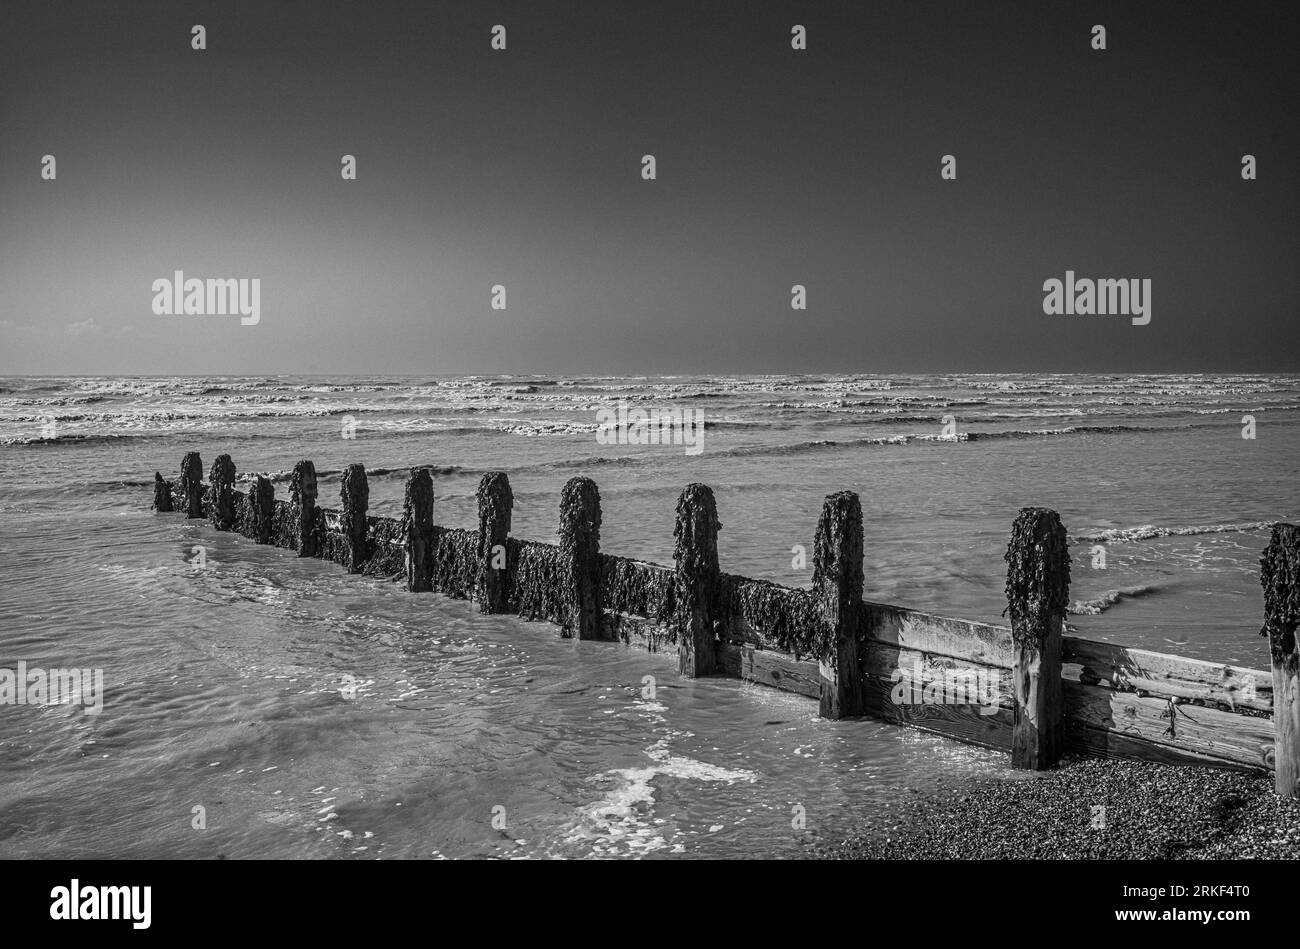 Un groyne en bois pour la défense de la mer recouvert d'algues s'étend en vagues qui roulent sur la plage de galets à Goring-by-Sea dans le Sussex de l'Ouest, au Royaume-Uni. Banque D'Images